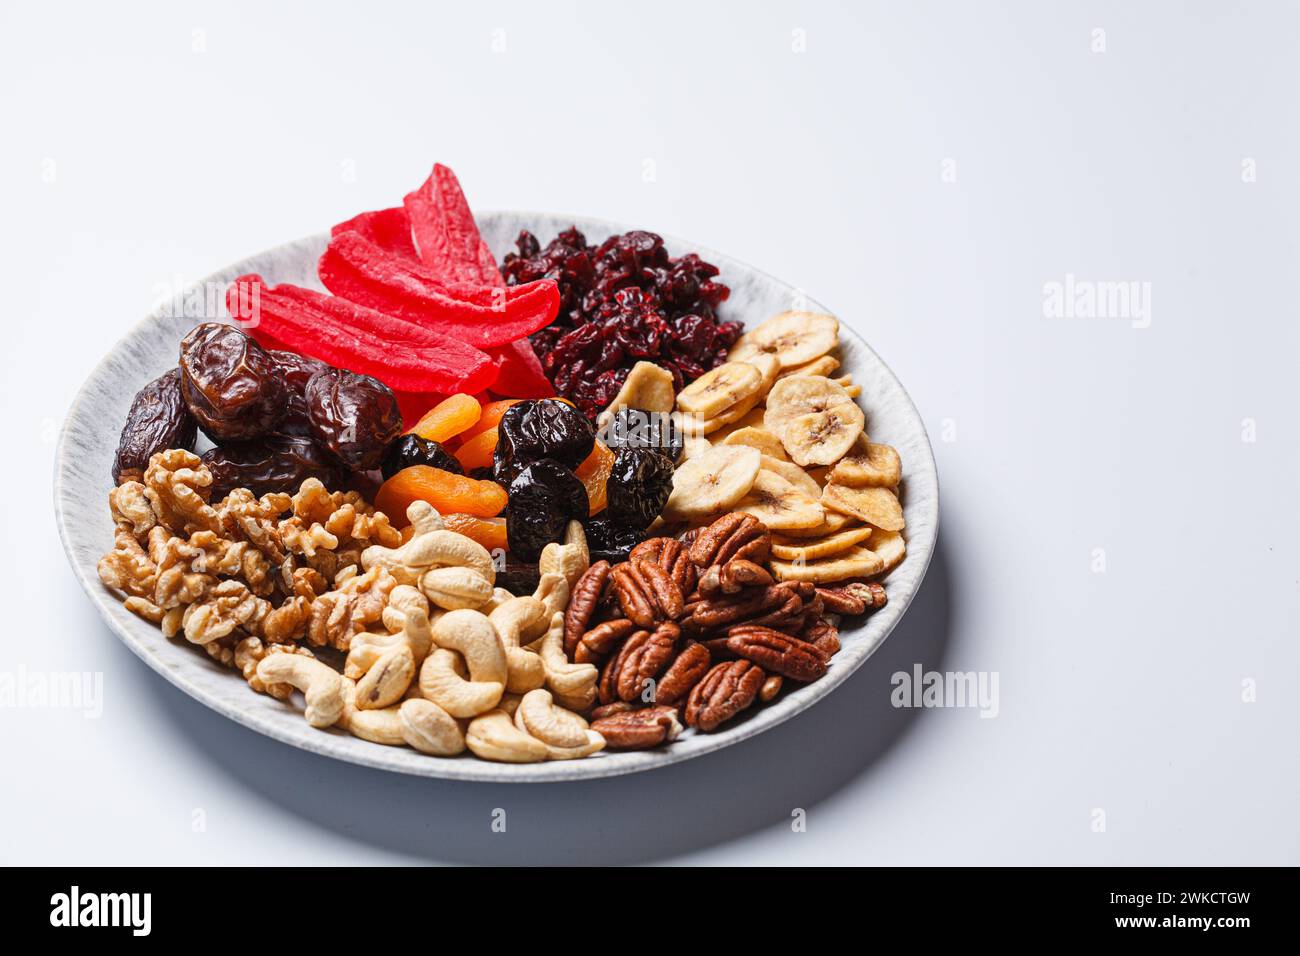 Getrocknete Früchte und Nüsse auf einem Teller, um den jüdischen Feiertag Tu BI Shevat zu feiern. Stockfoto